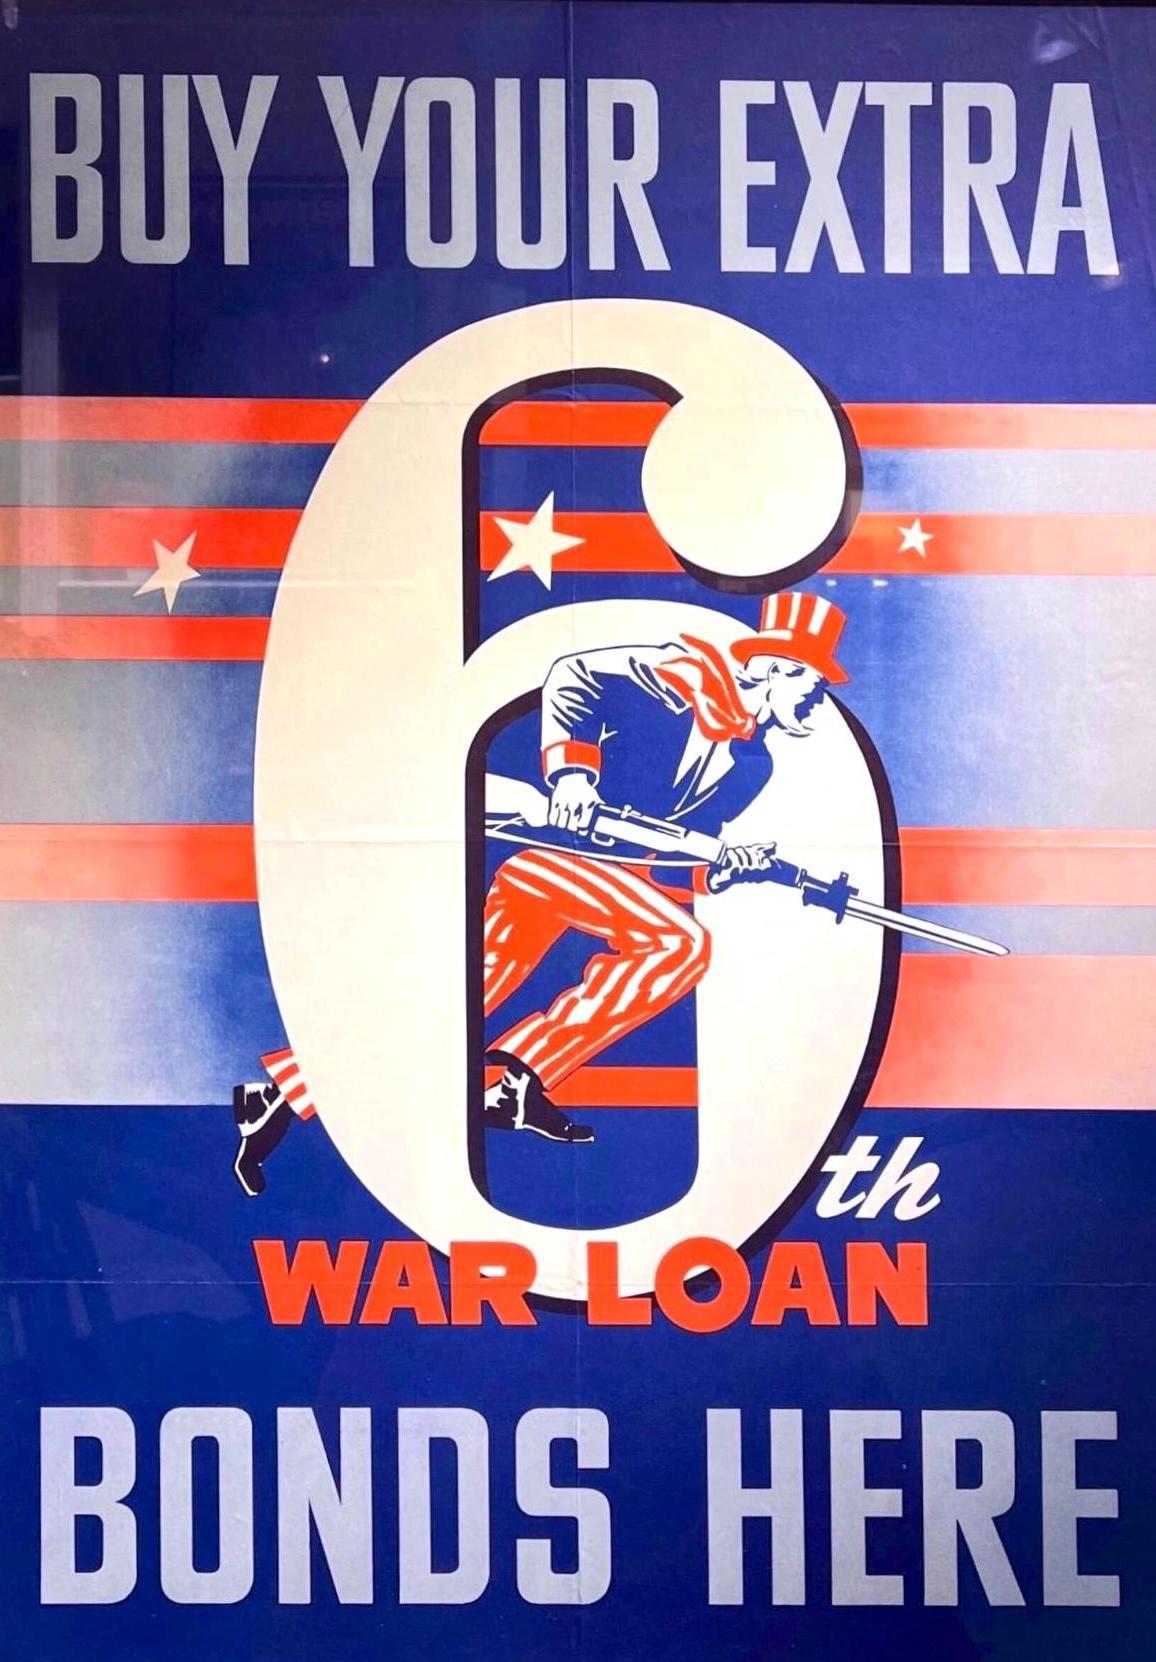 Il s'agit d'une affiche originale de la Seconde Guerre mondiale, datant de 1944. L'affiche indique 